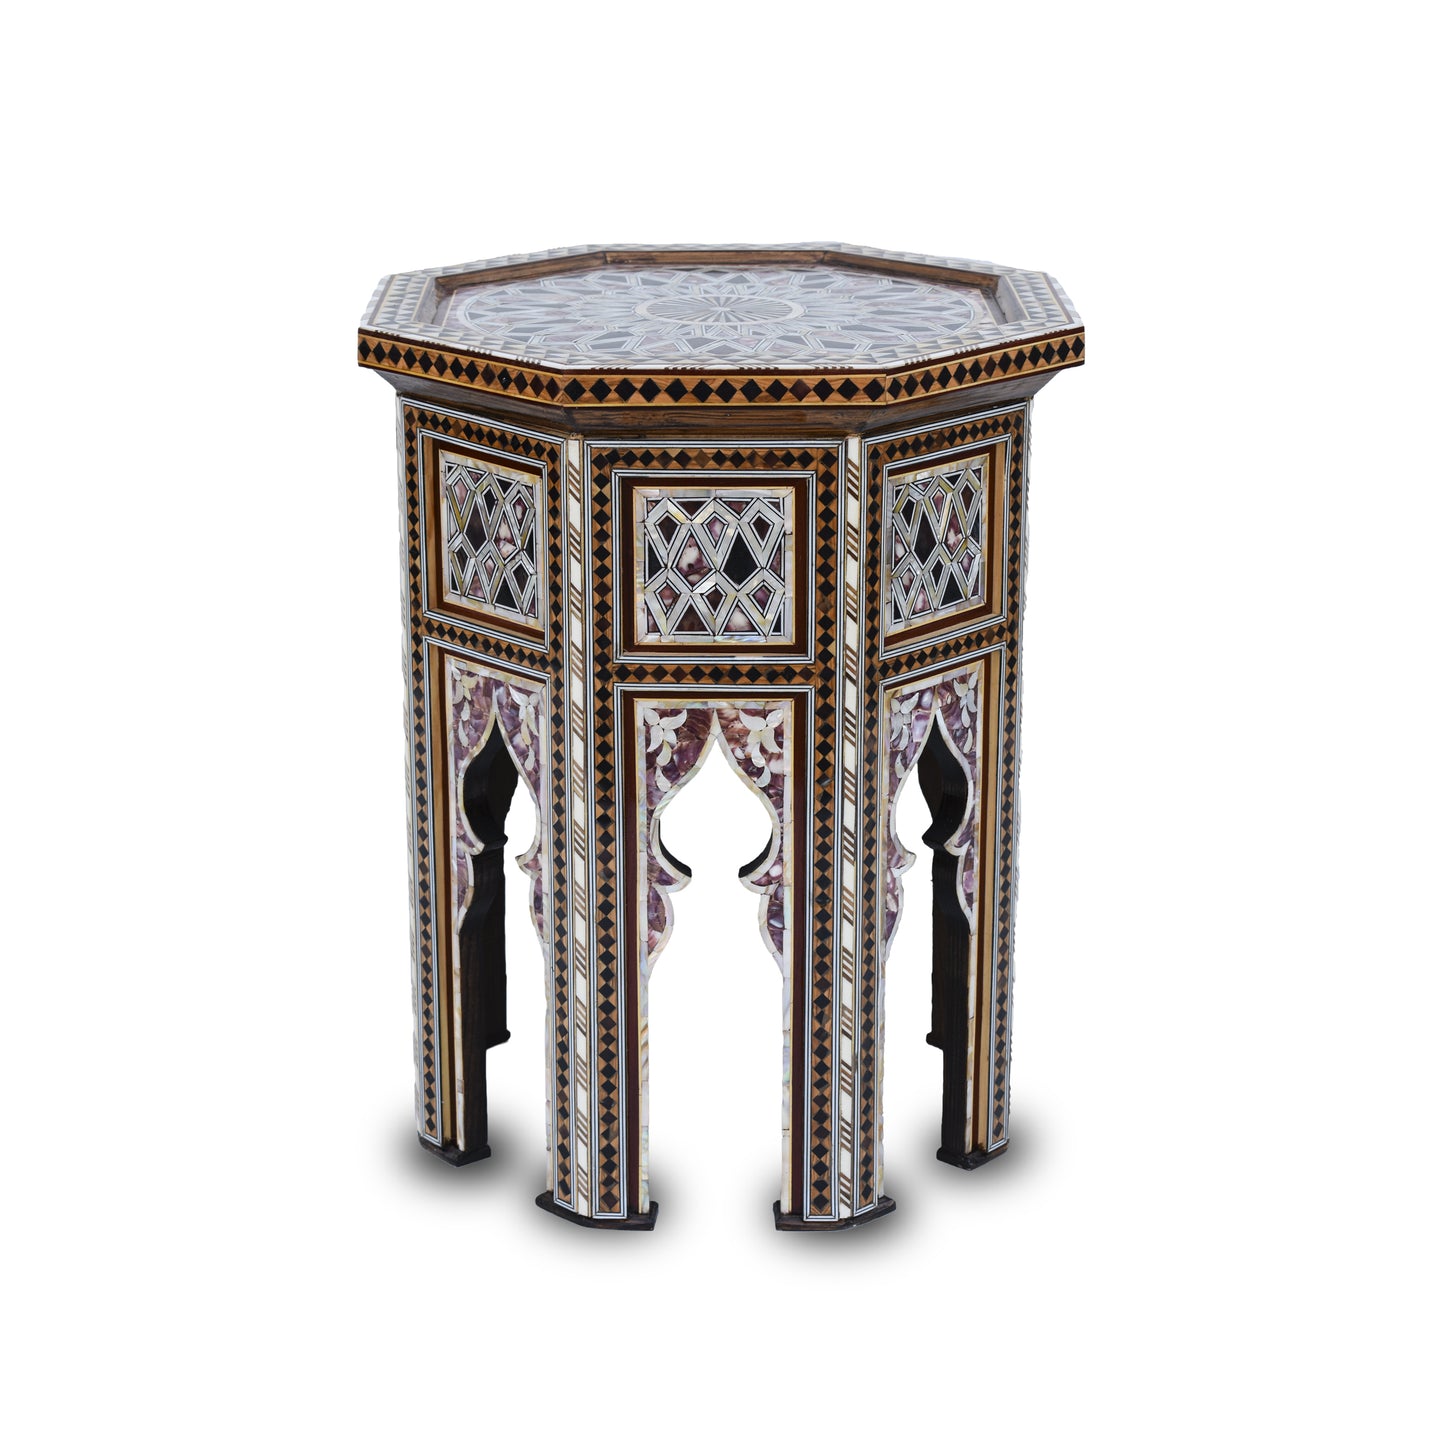 Auténtica mesa de centro artesanal siria con incrustaciones de nácar